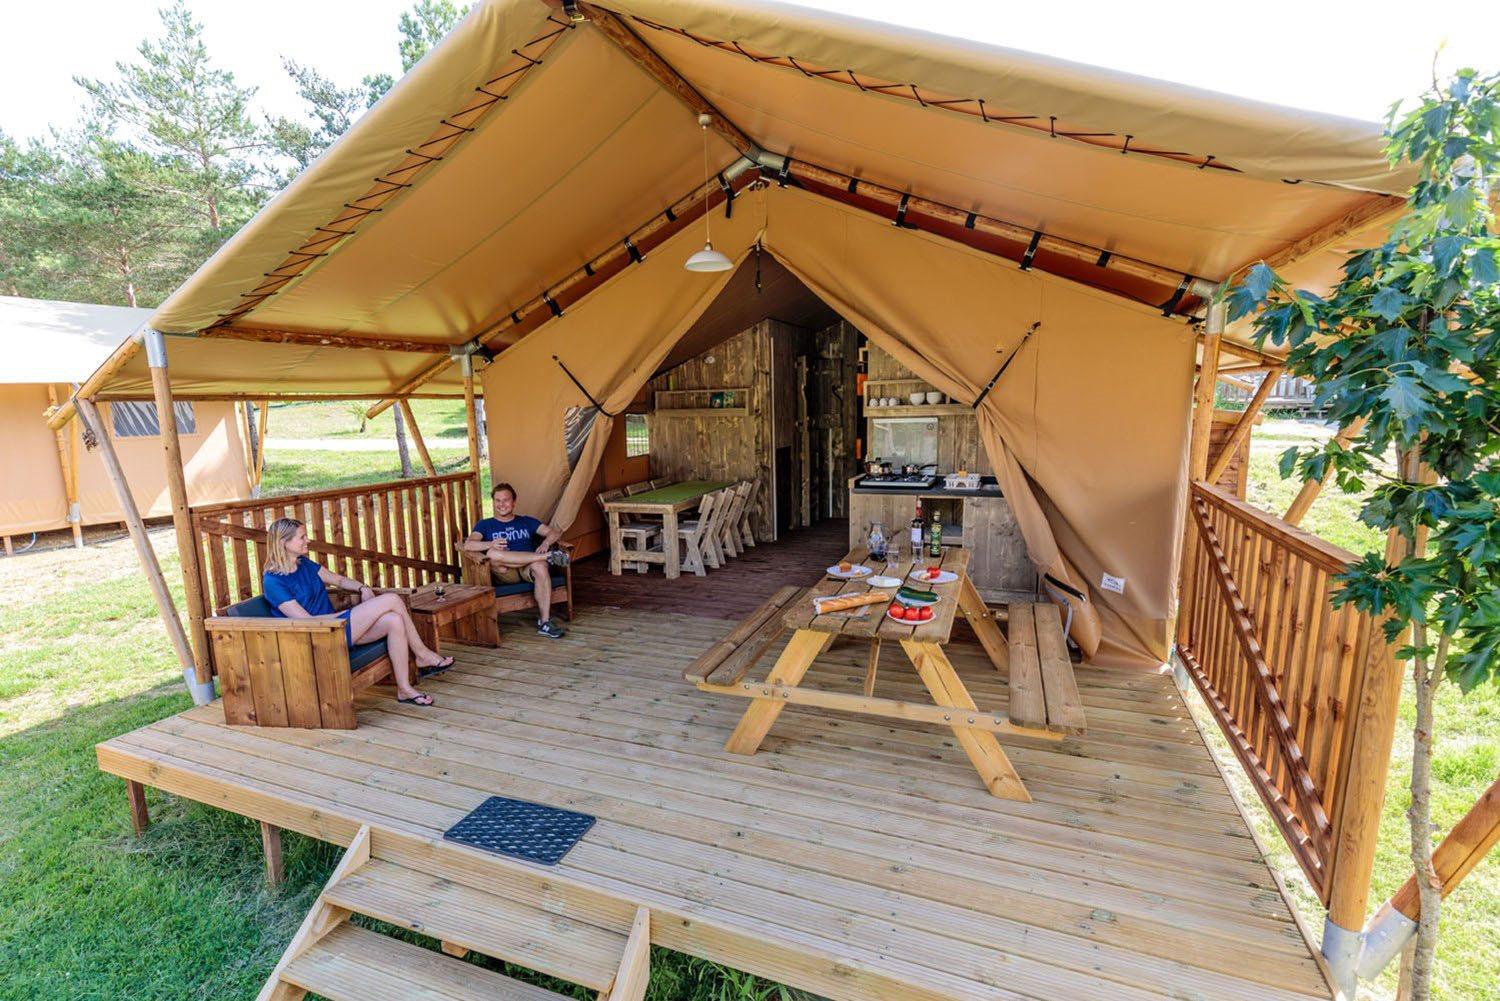 Tente Lodge 38m² - 4 adultes + 2 enfants - Terrasse couverte 16m²